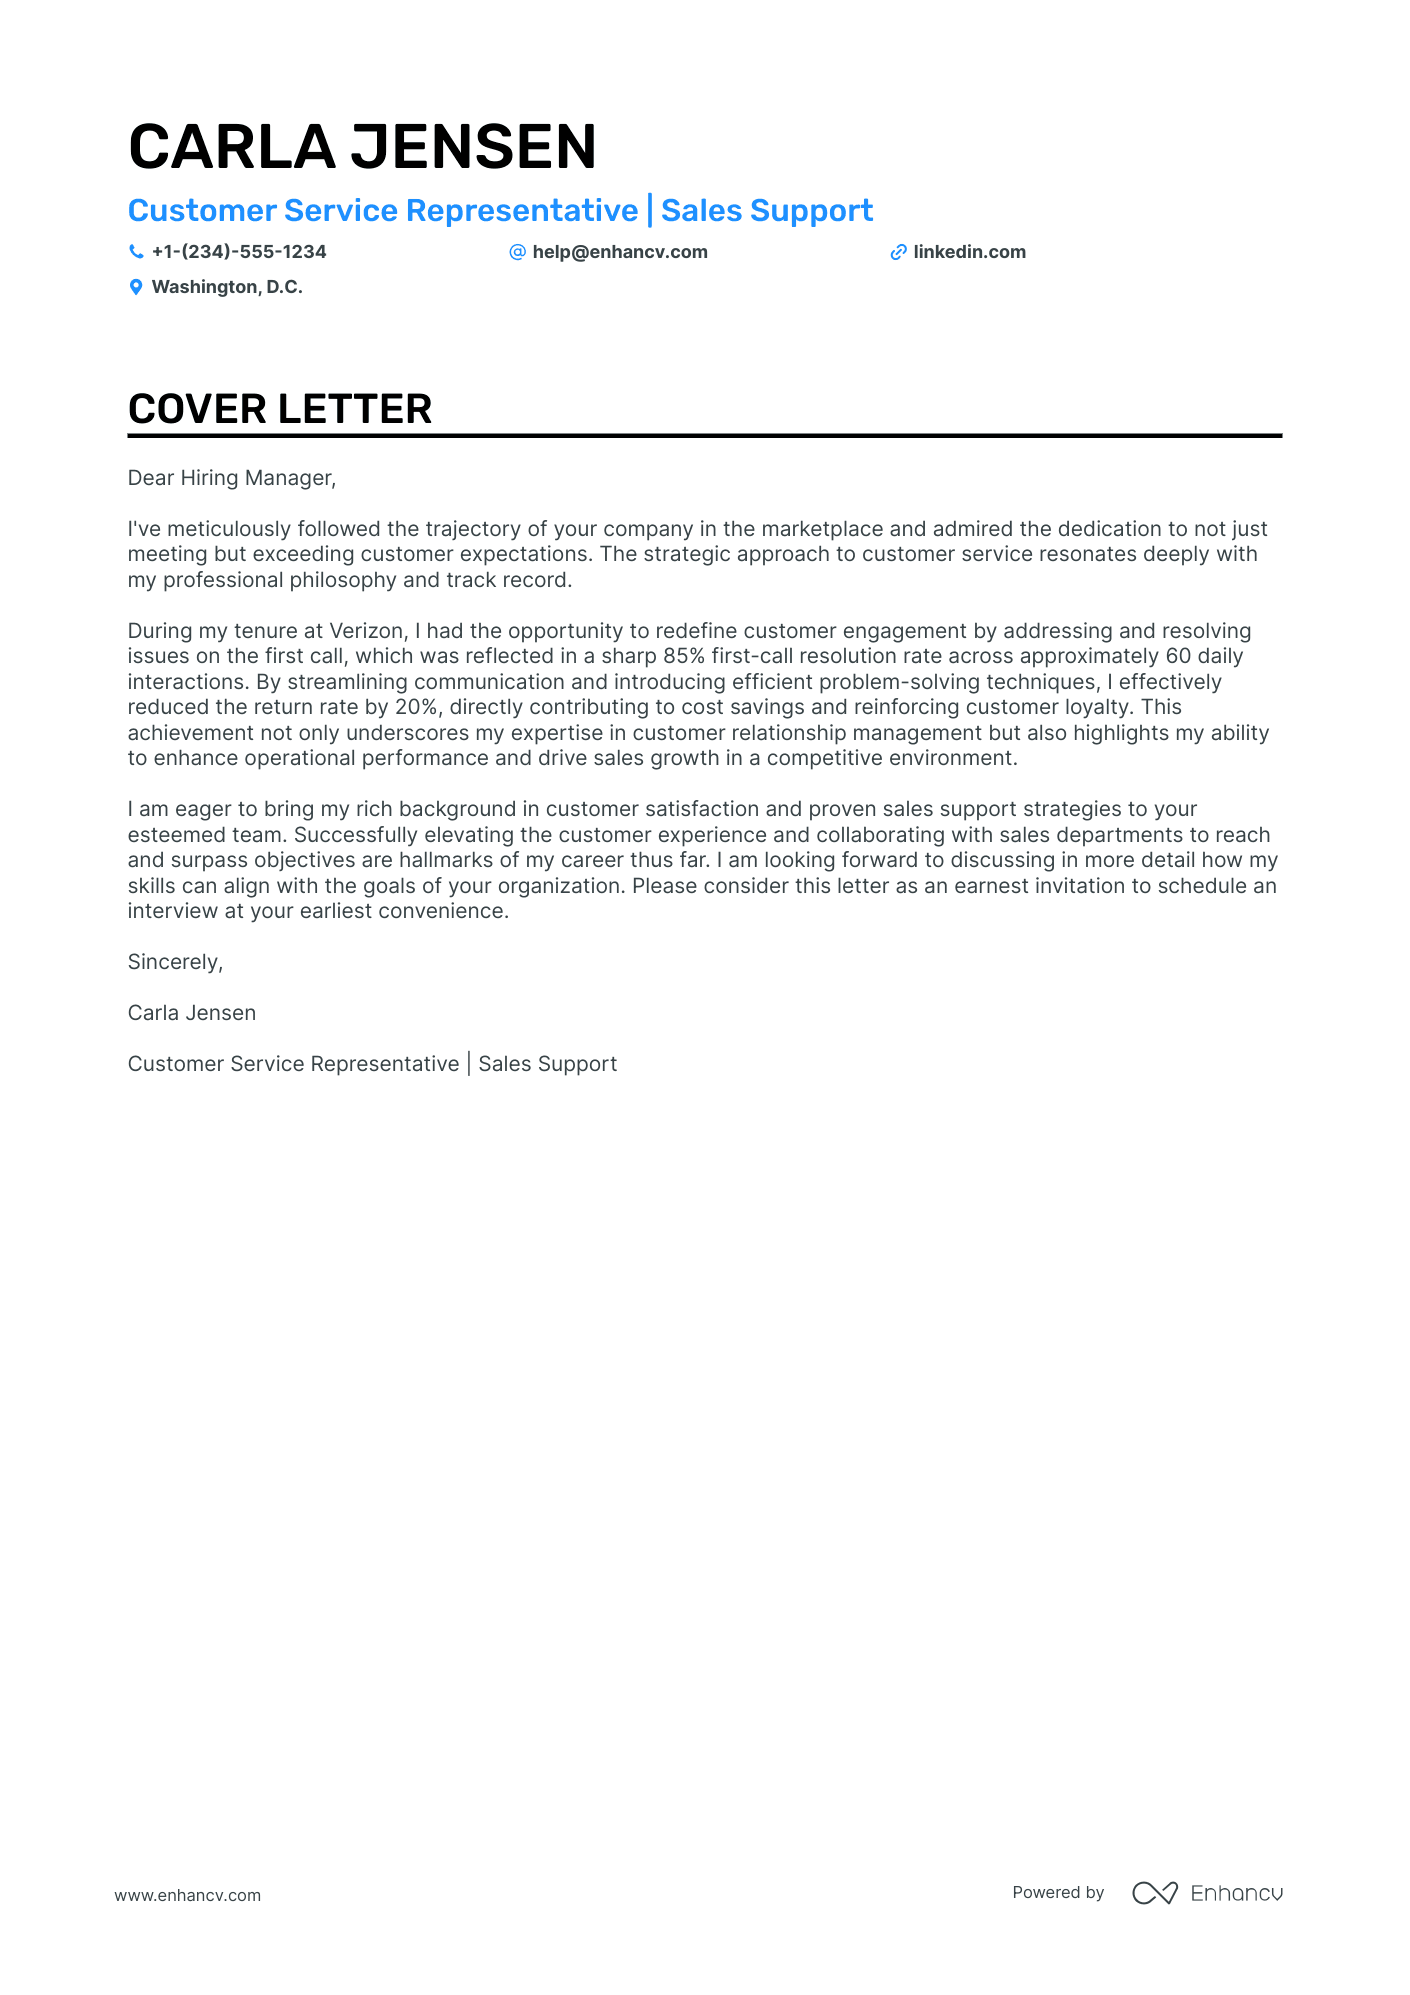 Remote Customer Service cover letter